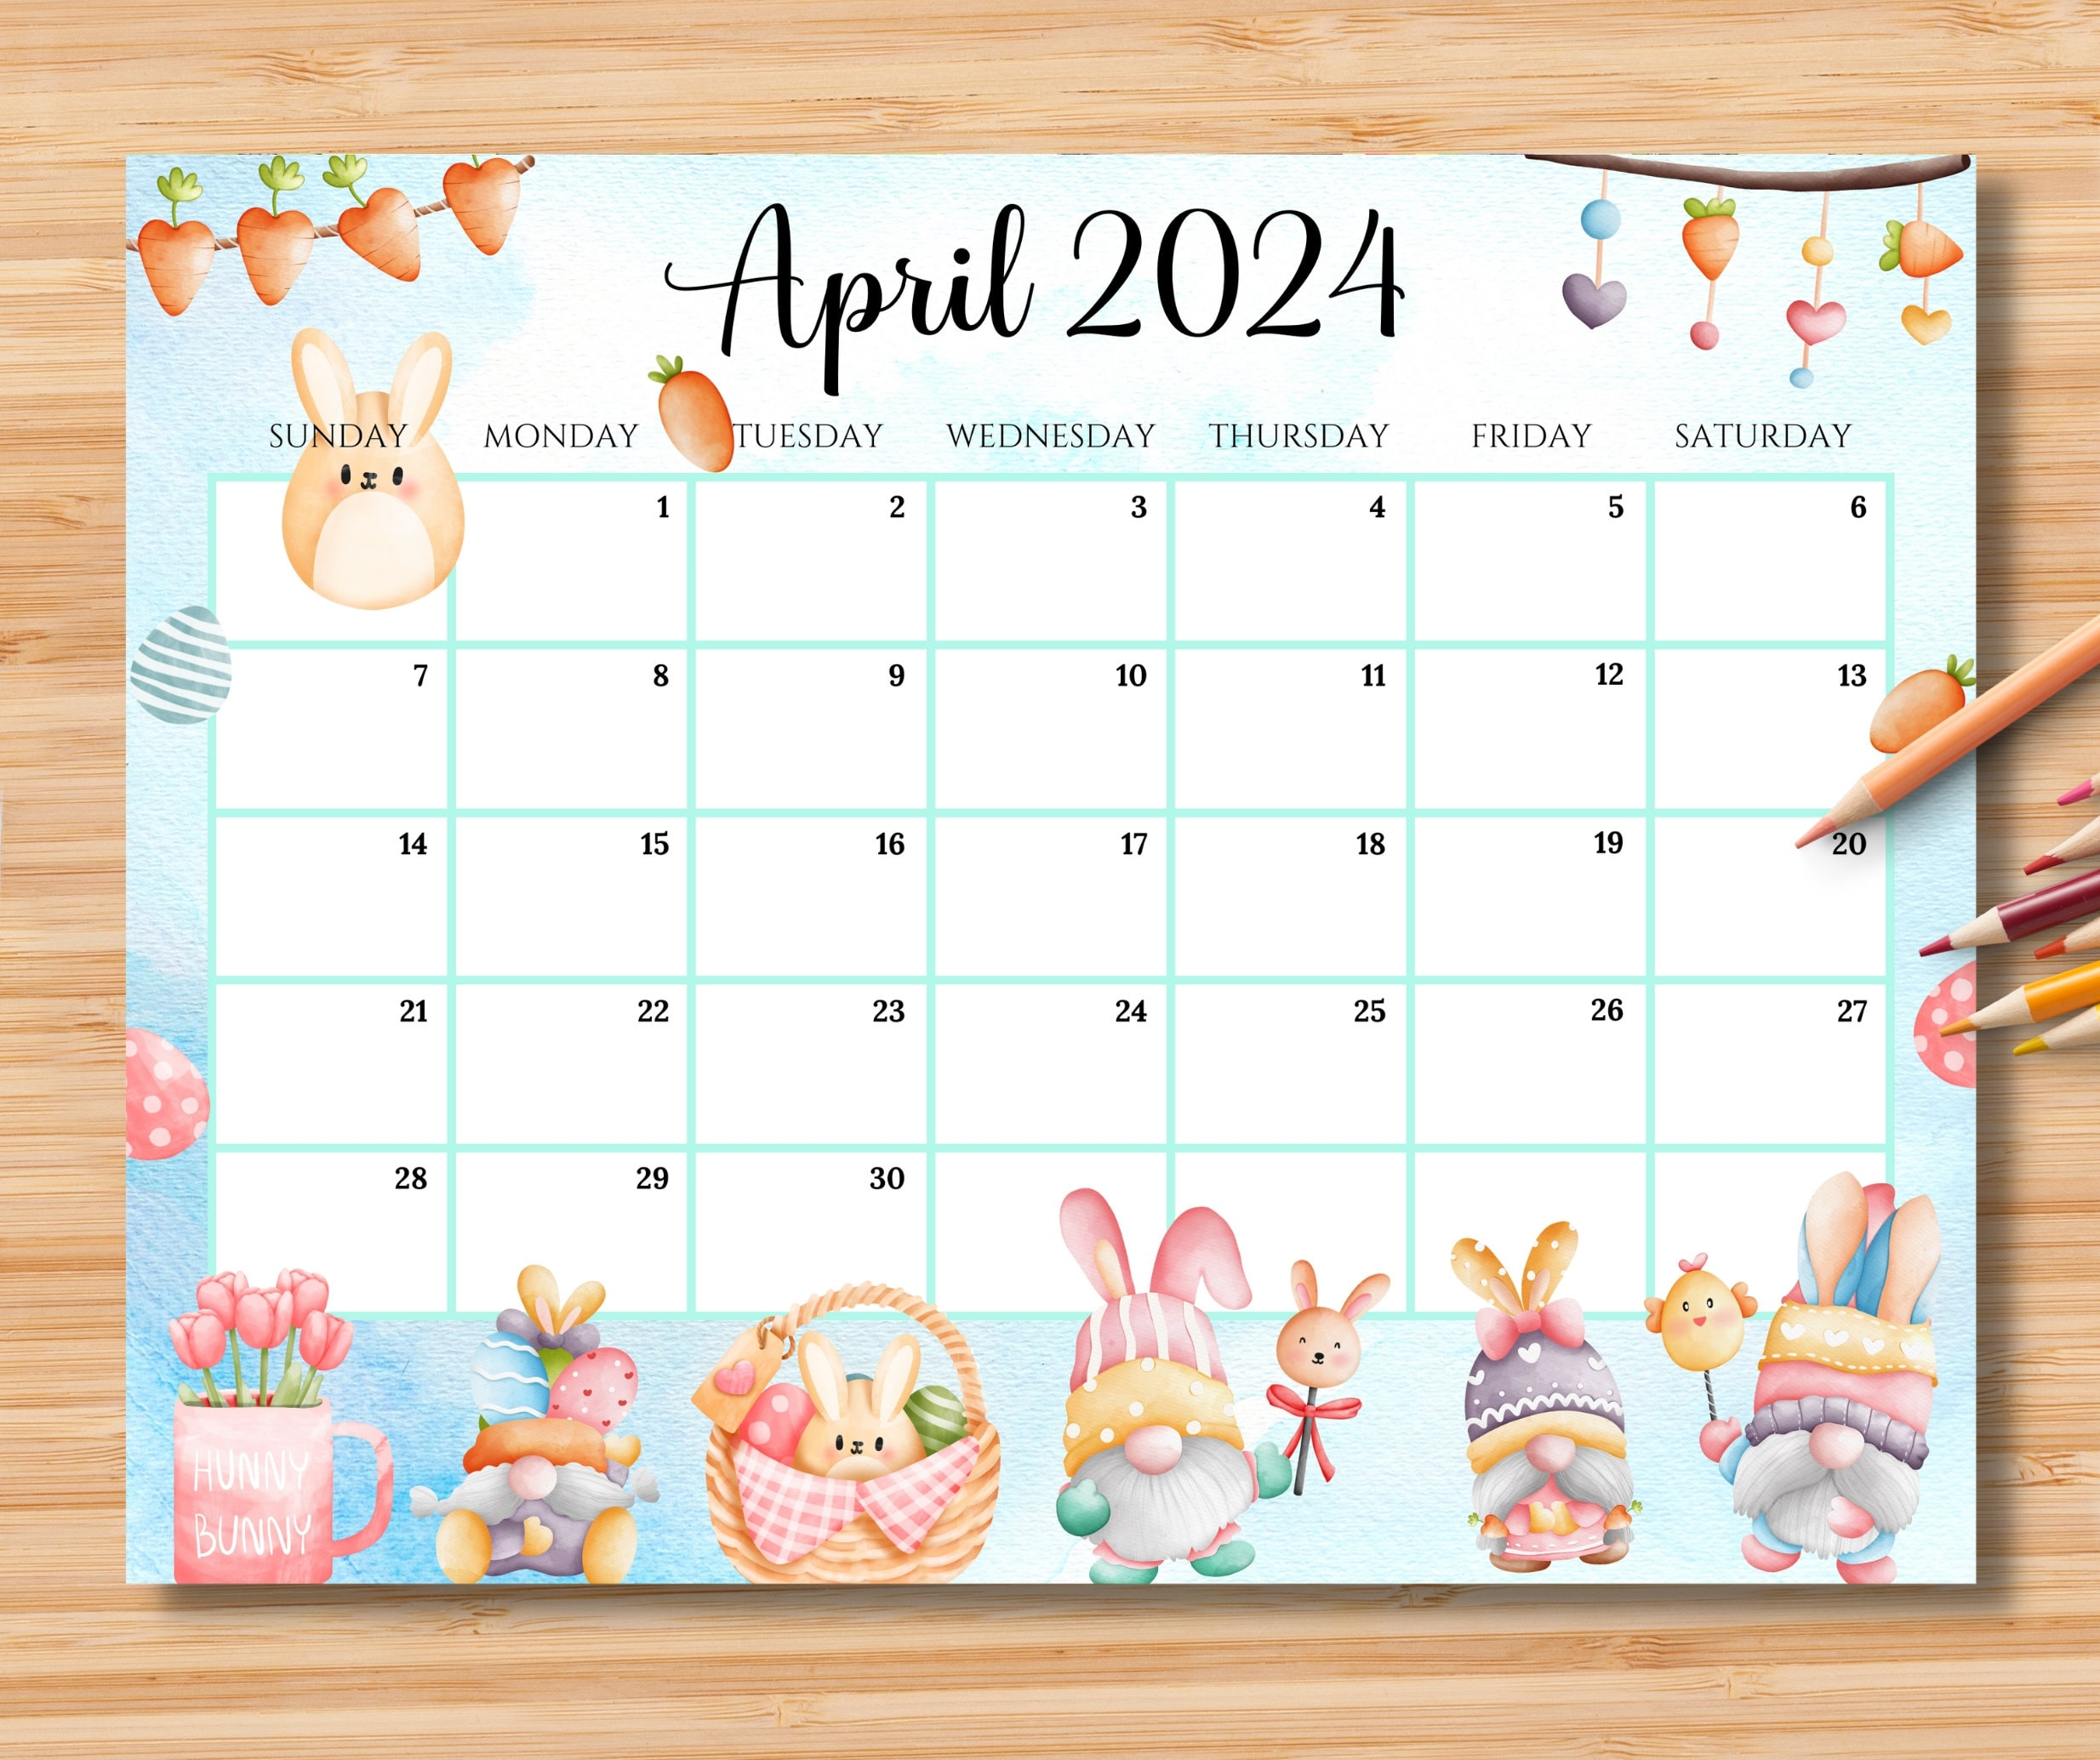 Bewerkbare Kalender April 2024, Happy Easter Day Met Schattige within April Calendar 2024 Easter